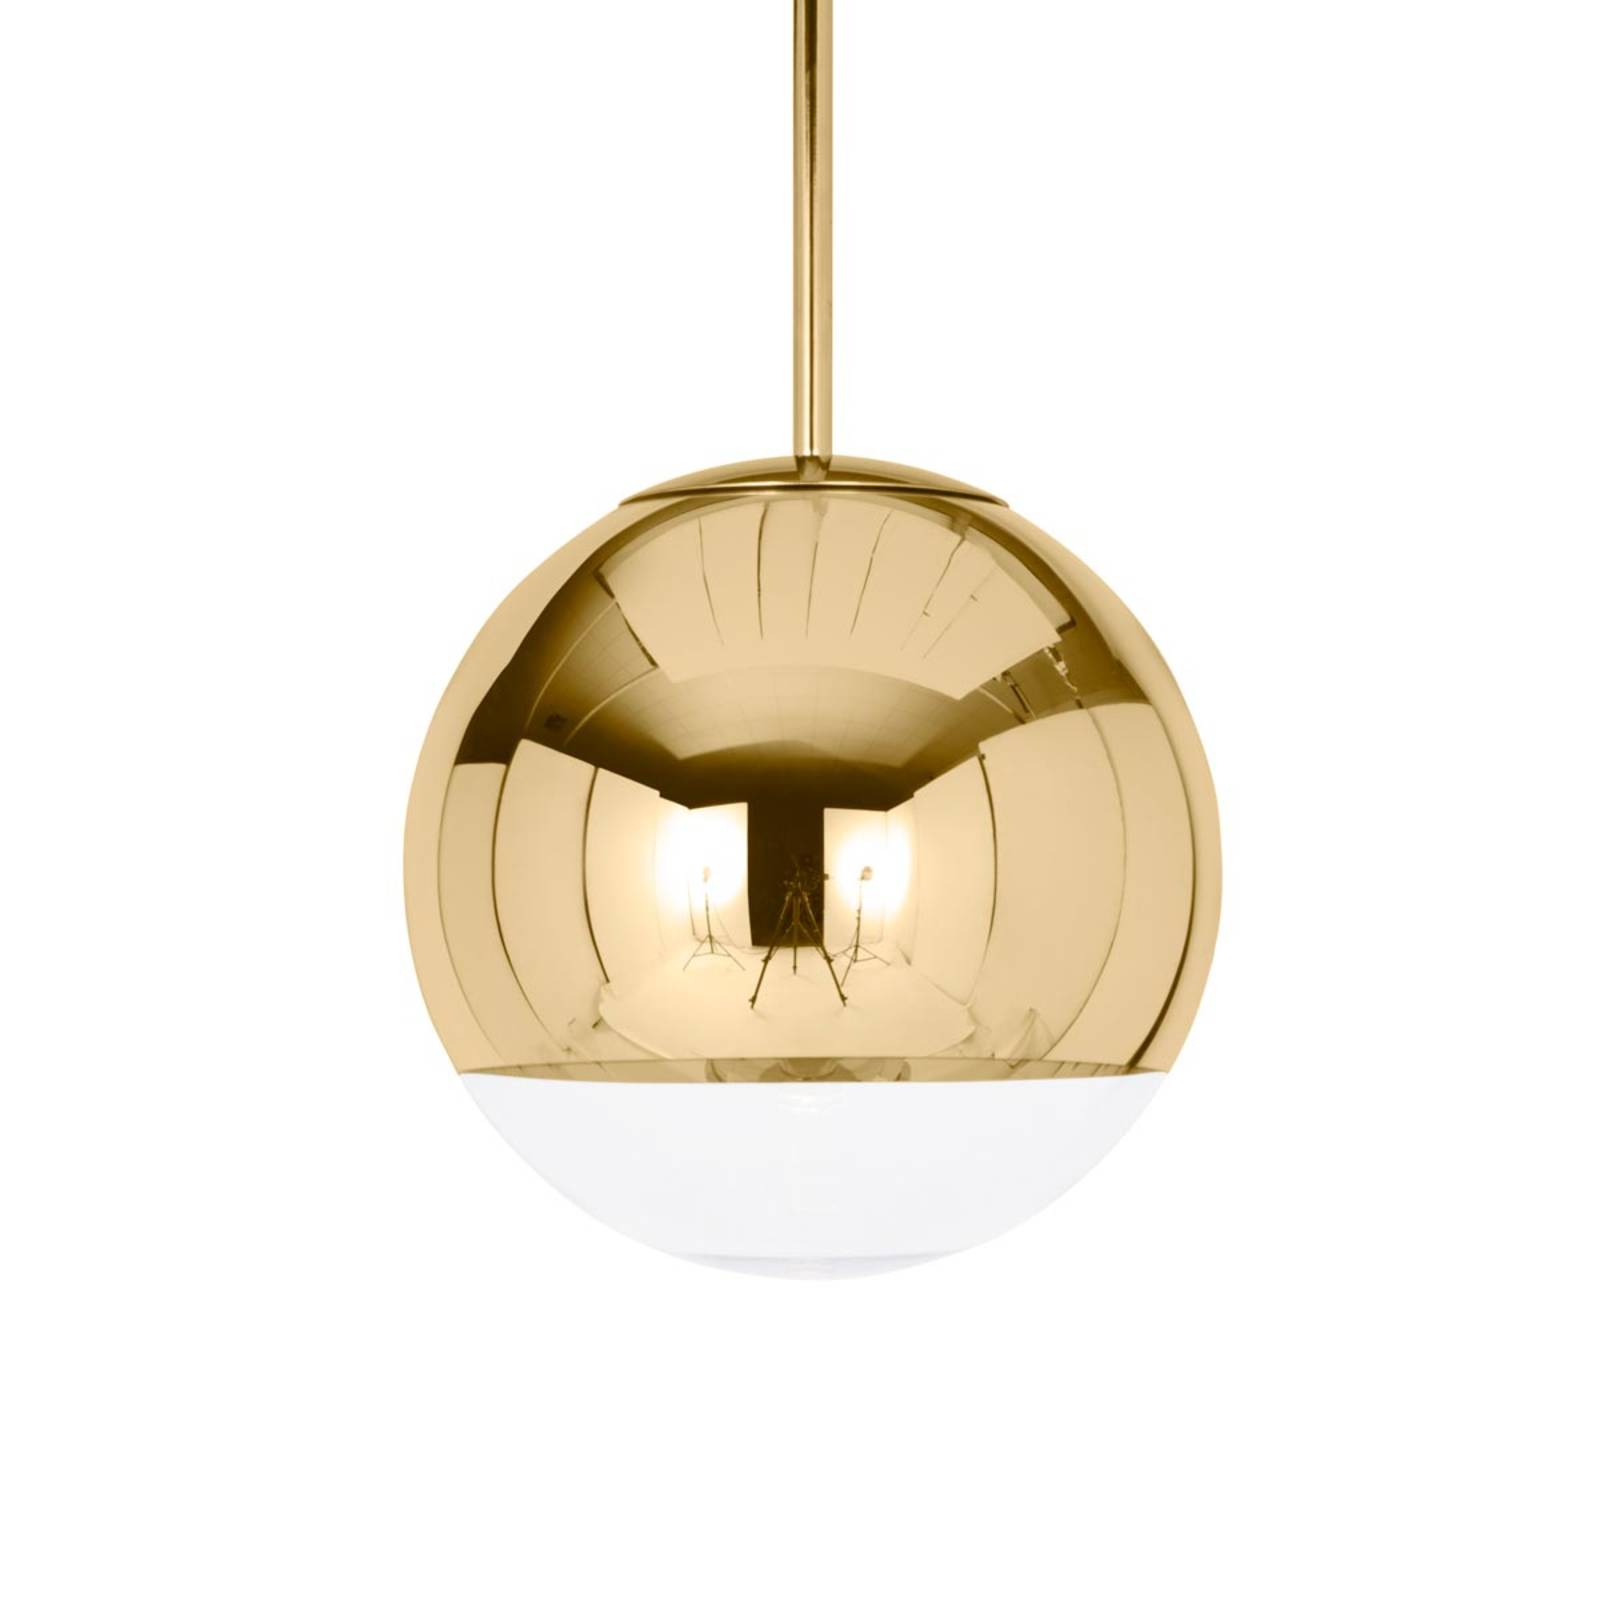 Tom Dixon Mirror Ball - Hängeleuchte gold, 25 cm